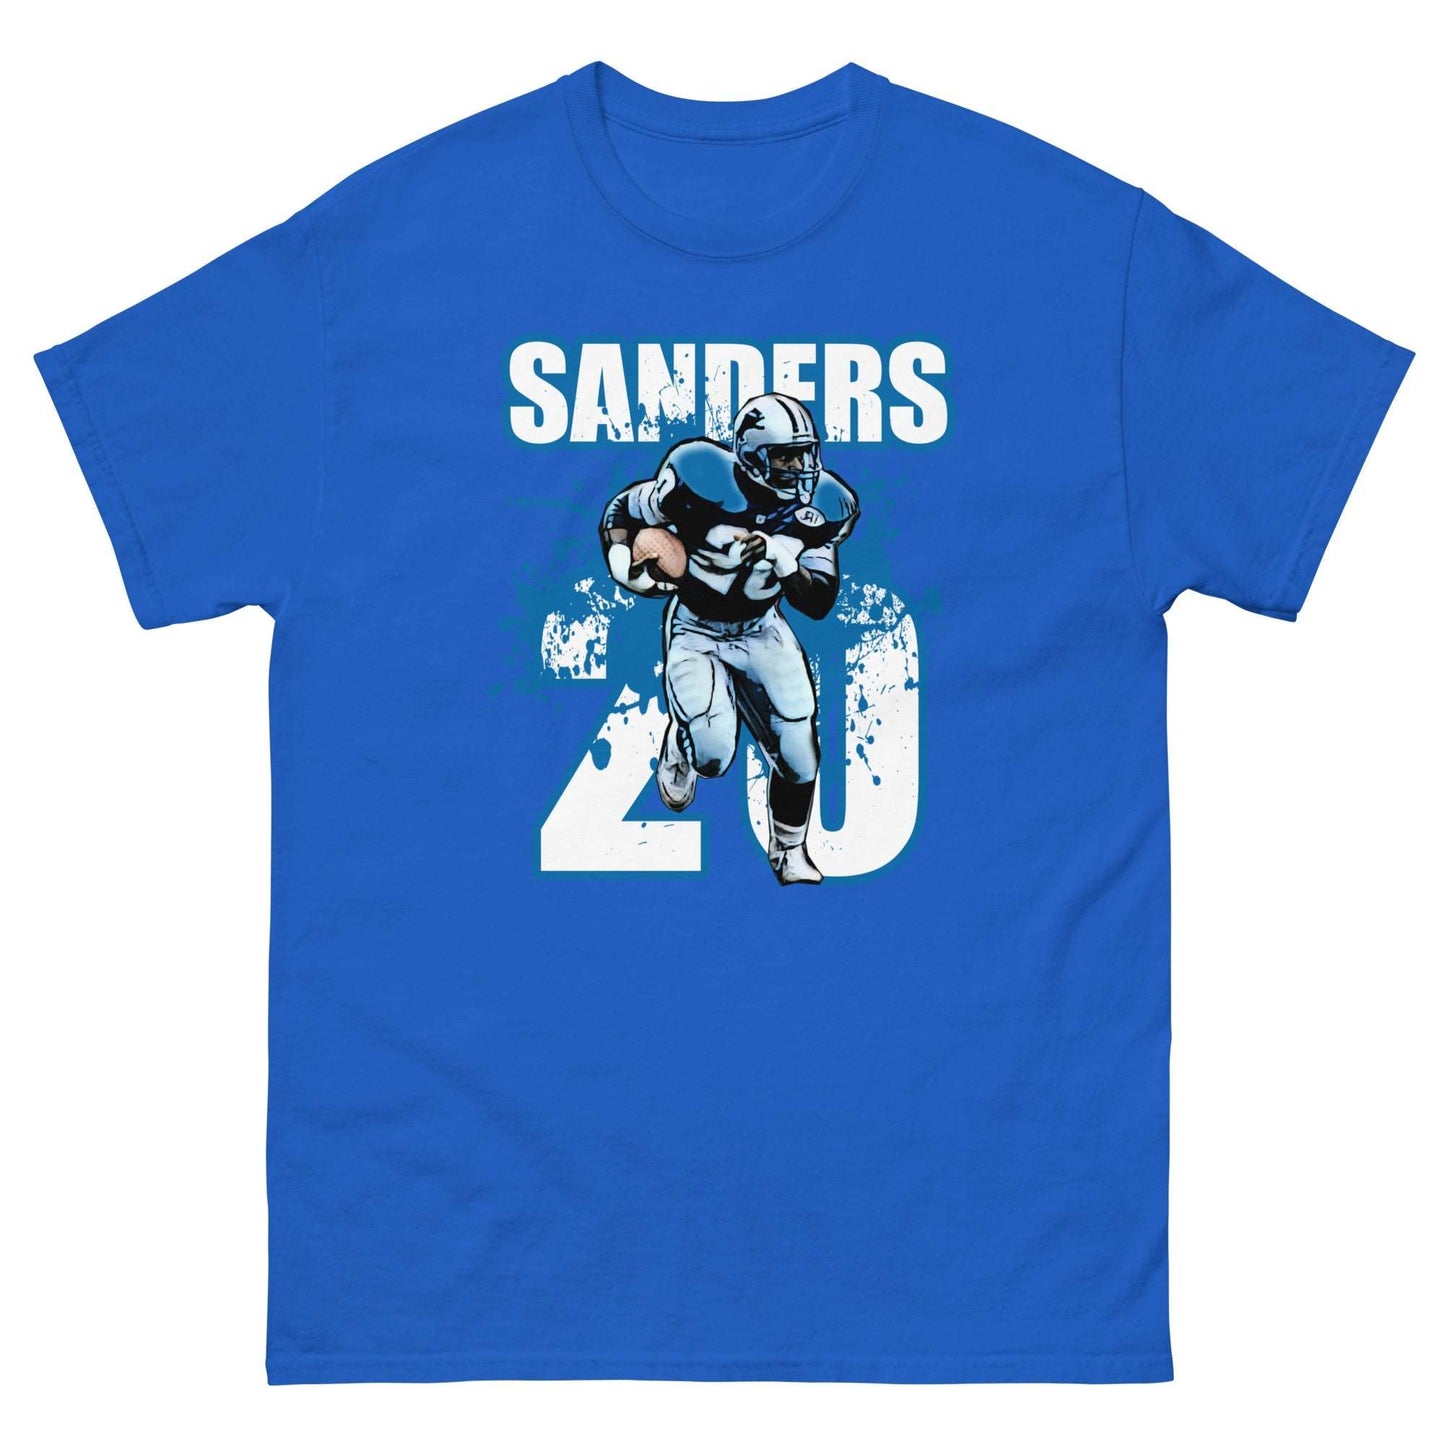 Barry Sanders - NFL Football Icon Tee - thenightmareinc